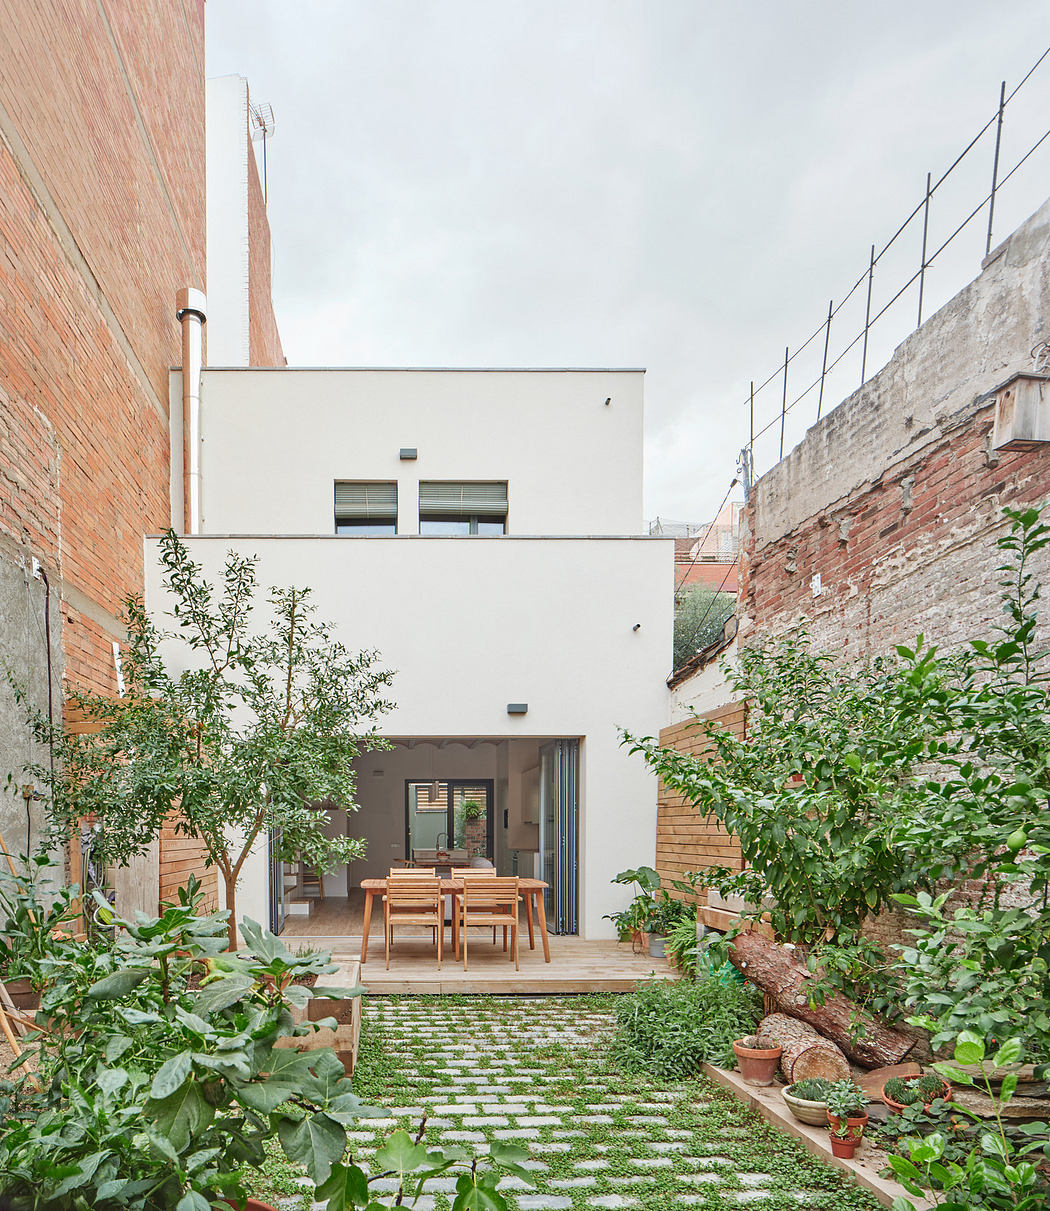 Urban courtyard with garden and contemporary home exterior.